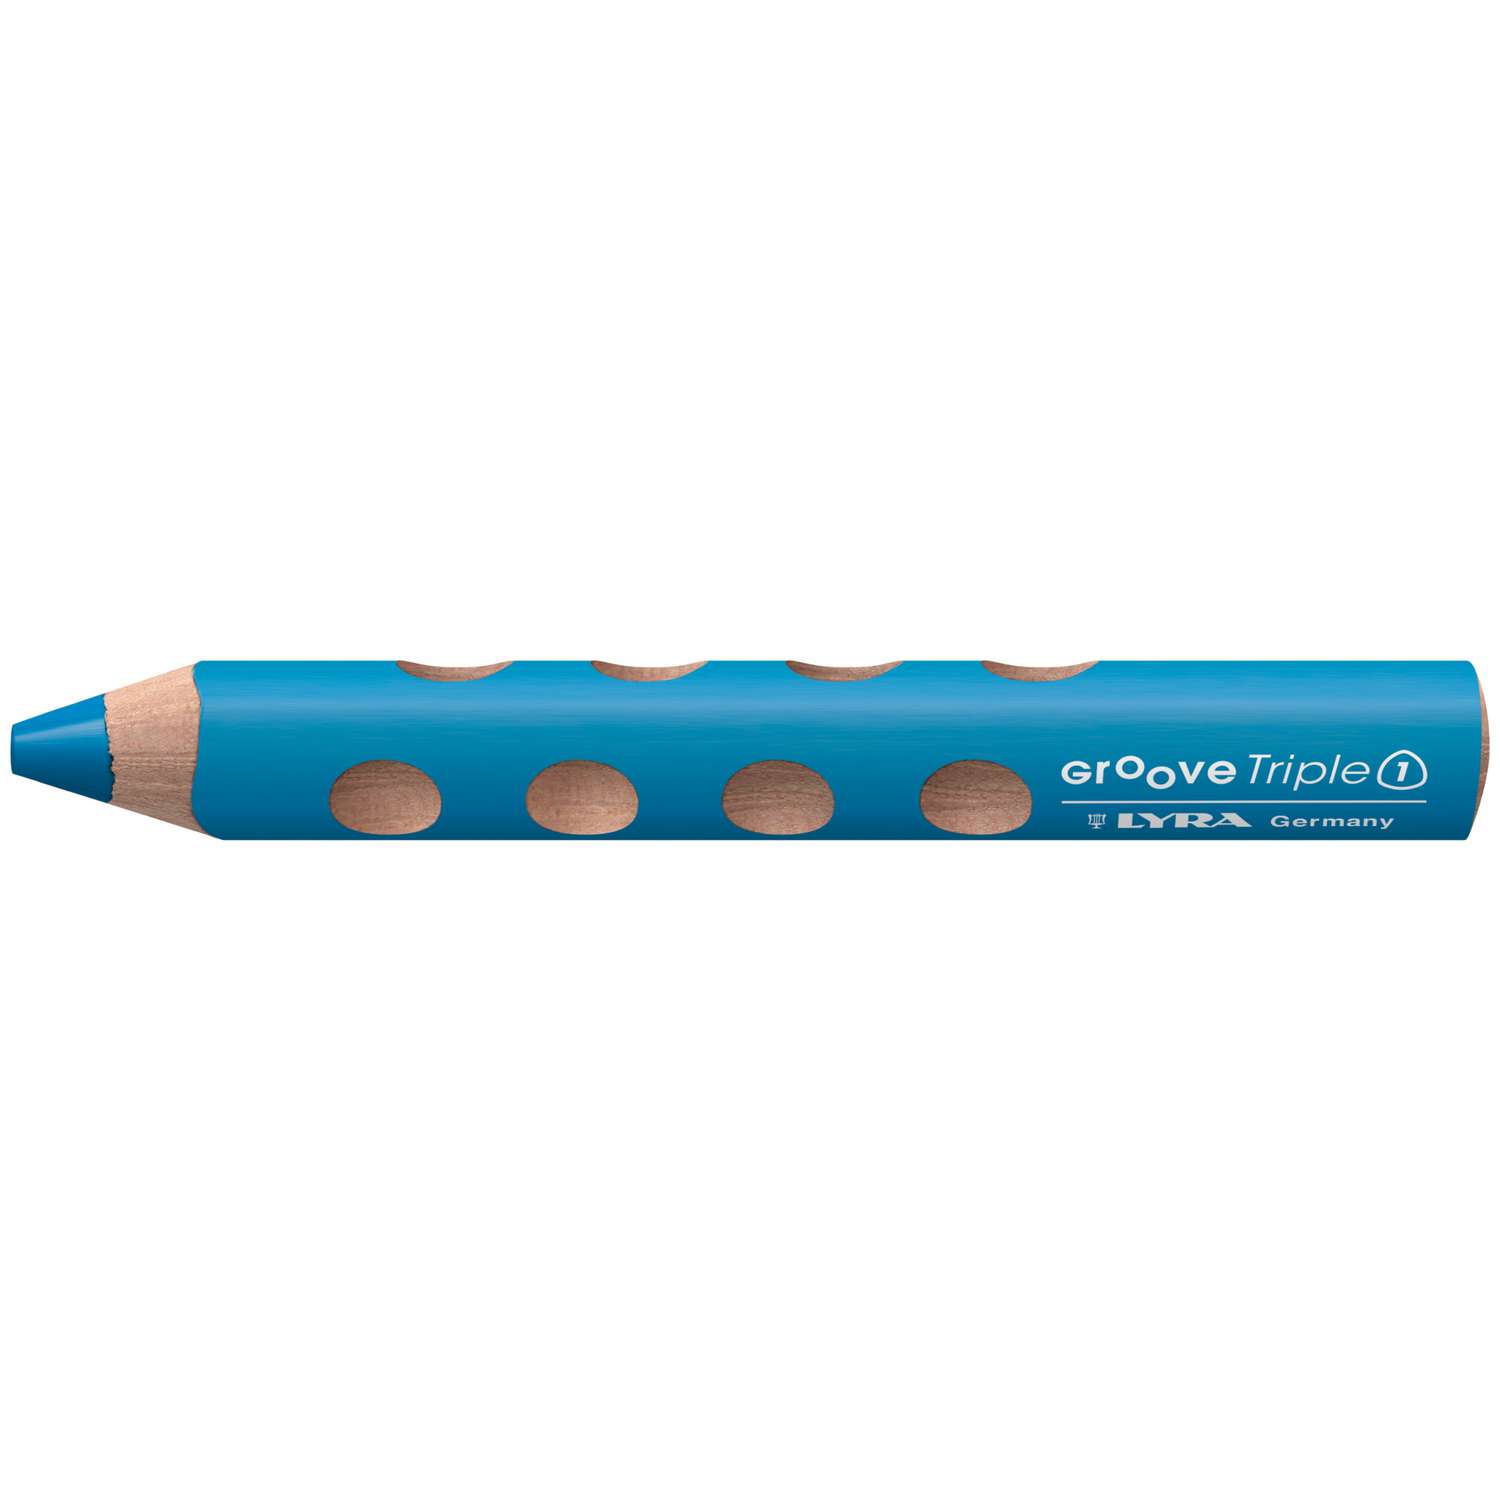 Crayons Lyra 3 en 1 Triple One - Couleur, Cire et aquarellables